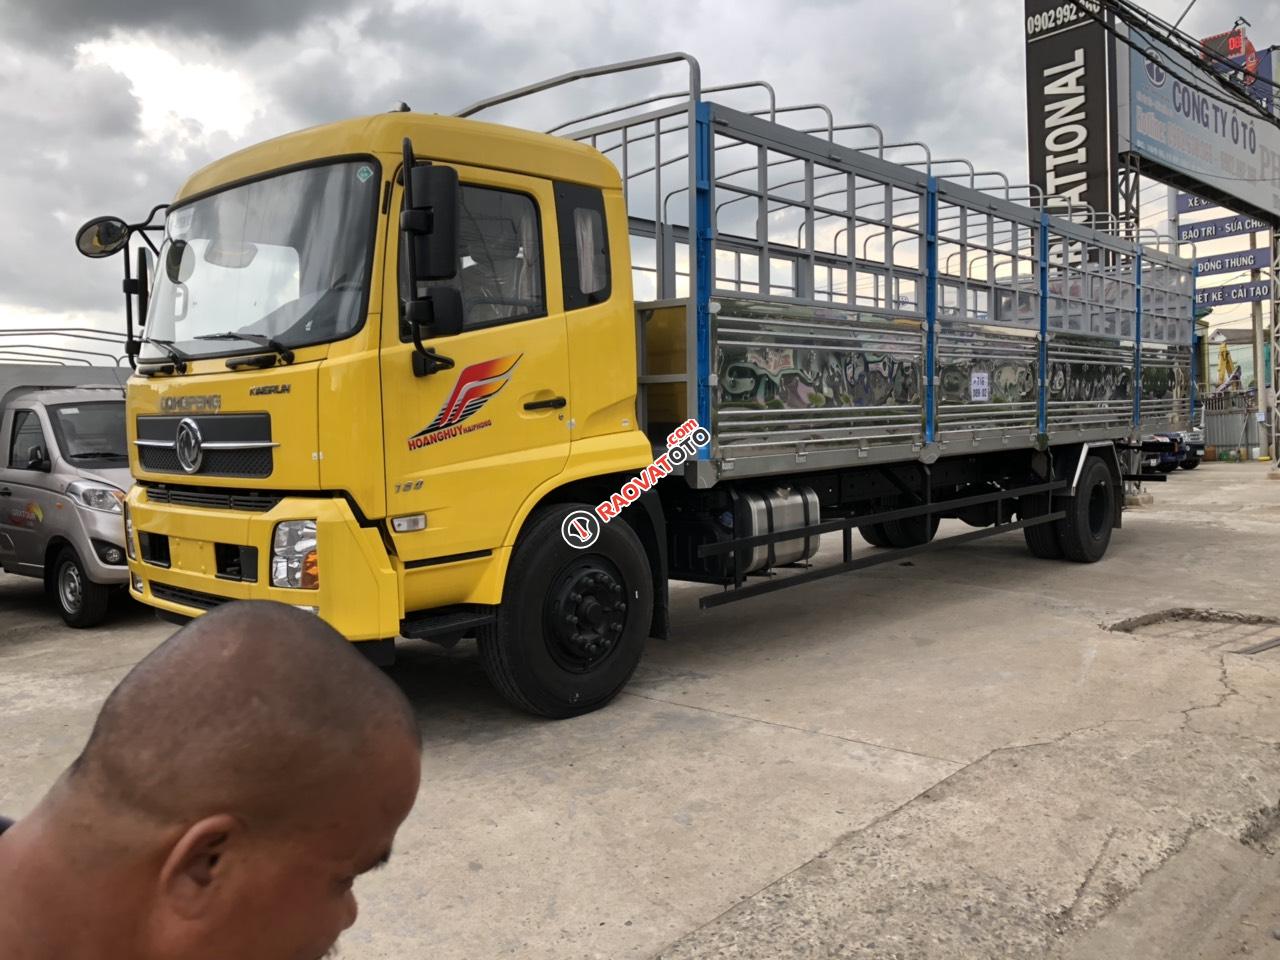 Bán xe ô tô tải, nhãn hiệu Dongfen 9.35 tấn thùng dài 9.5m Euro 5, giá tốt 2019-1